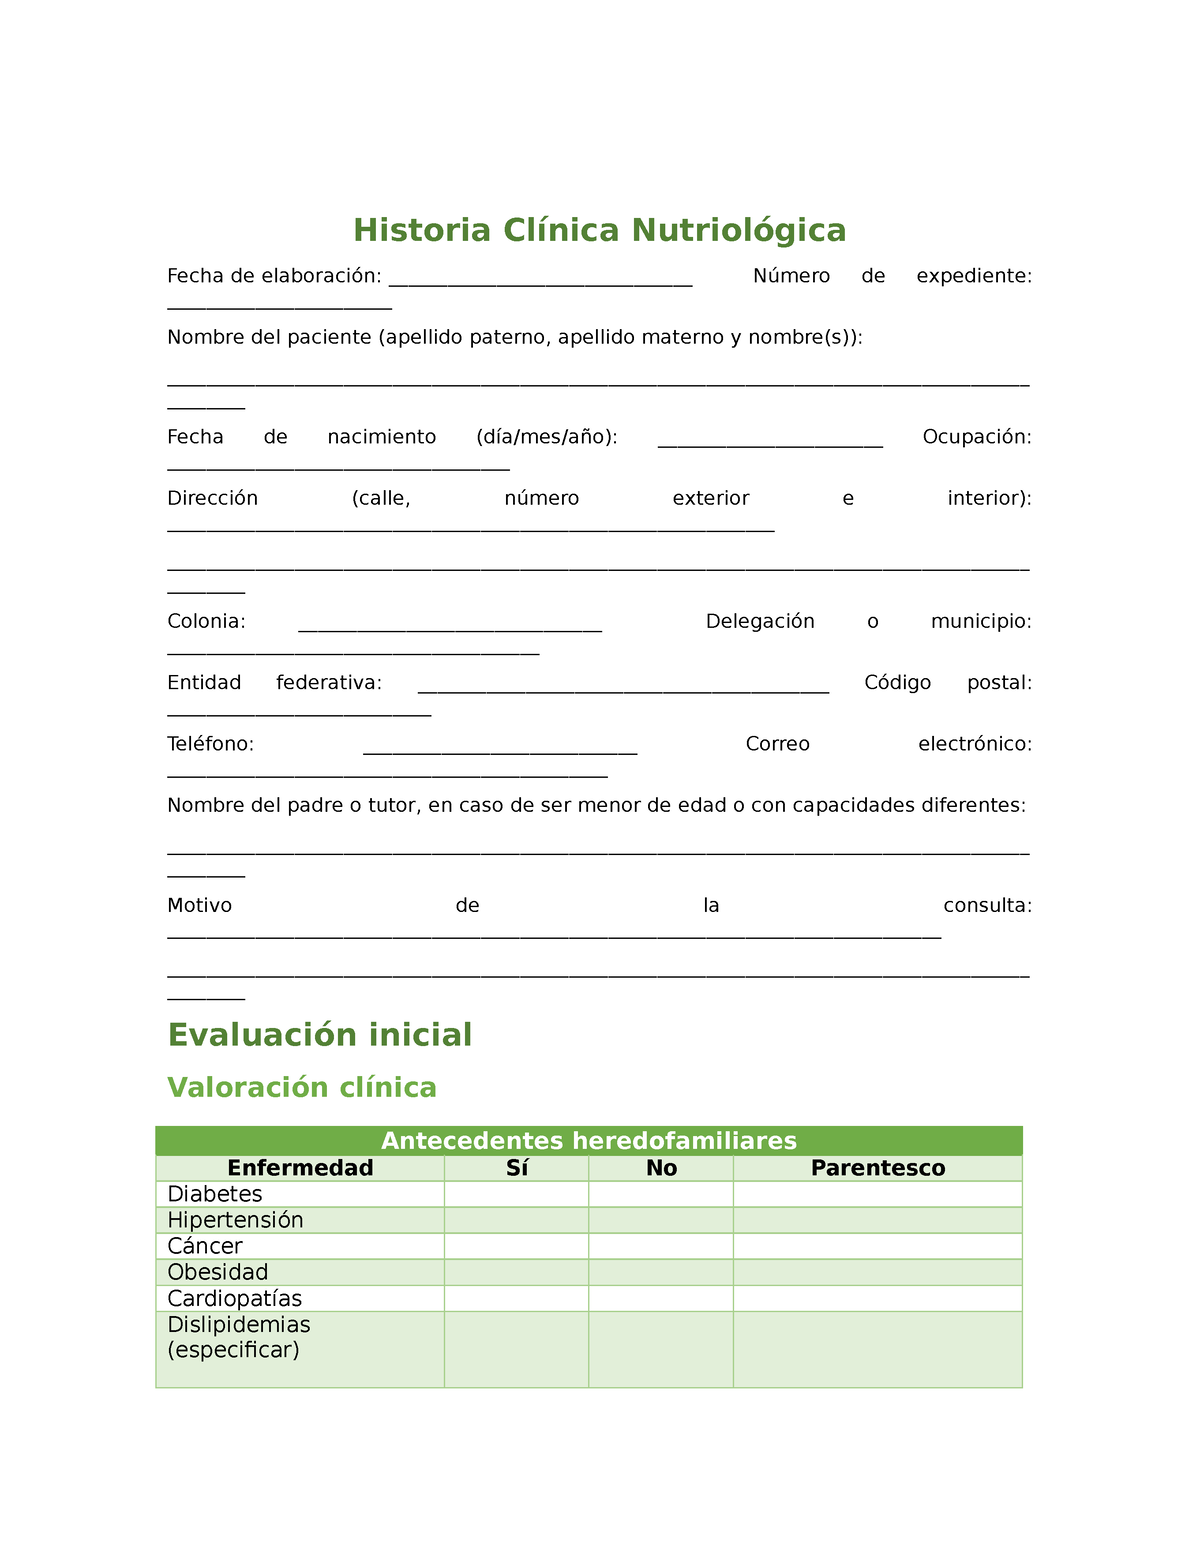 Historia Clinica Nutricional Docx Gordo Alimentos 7985